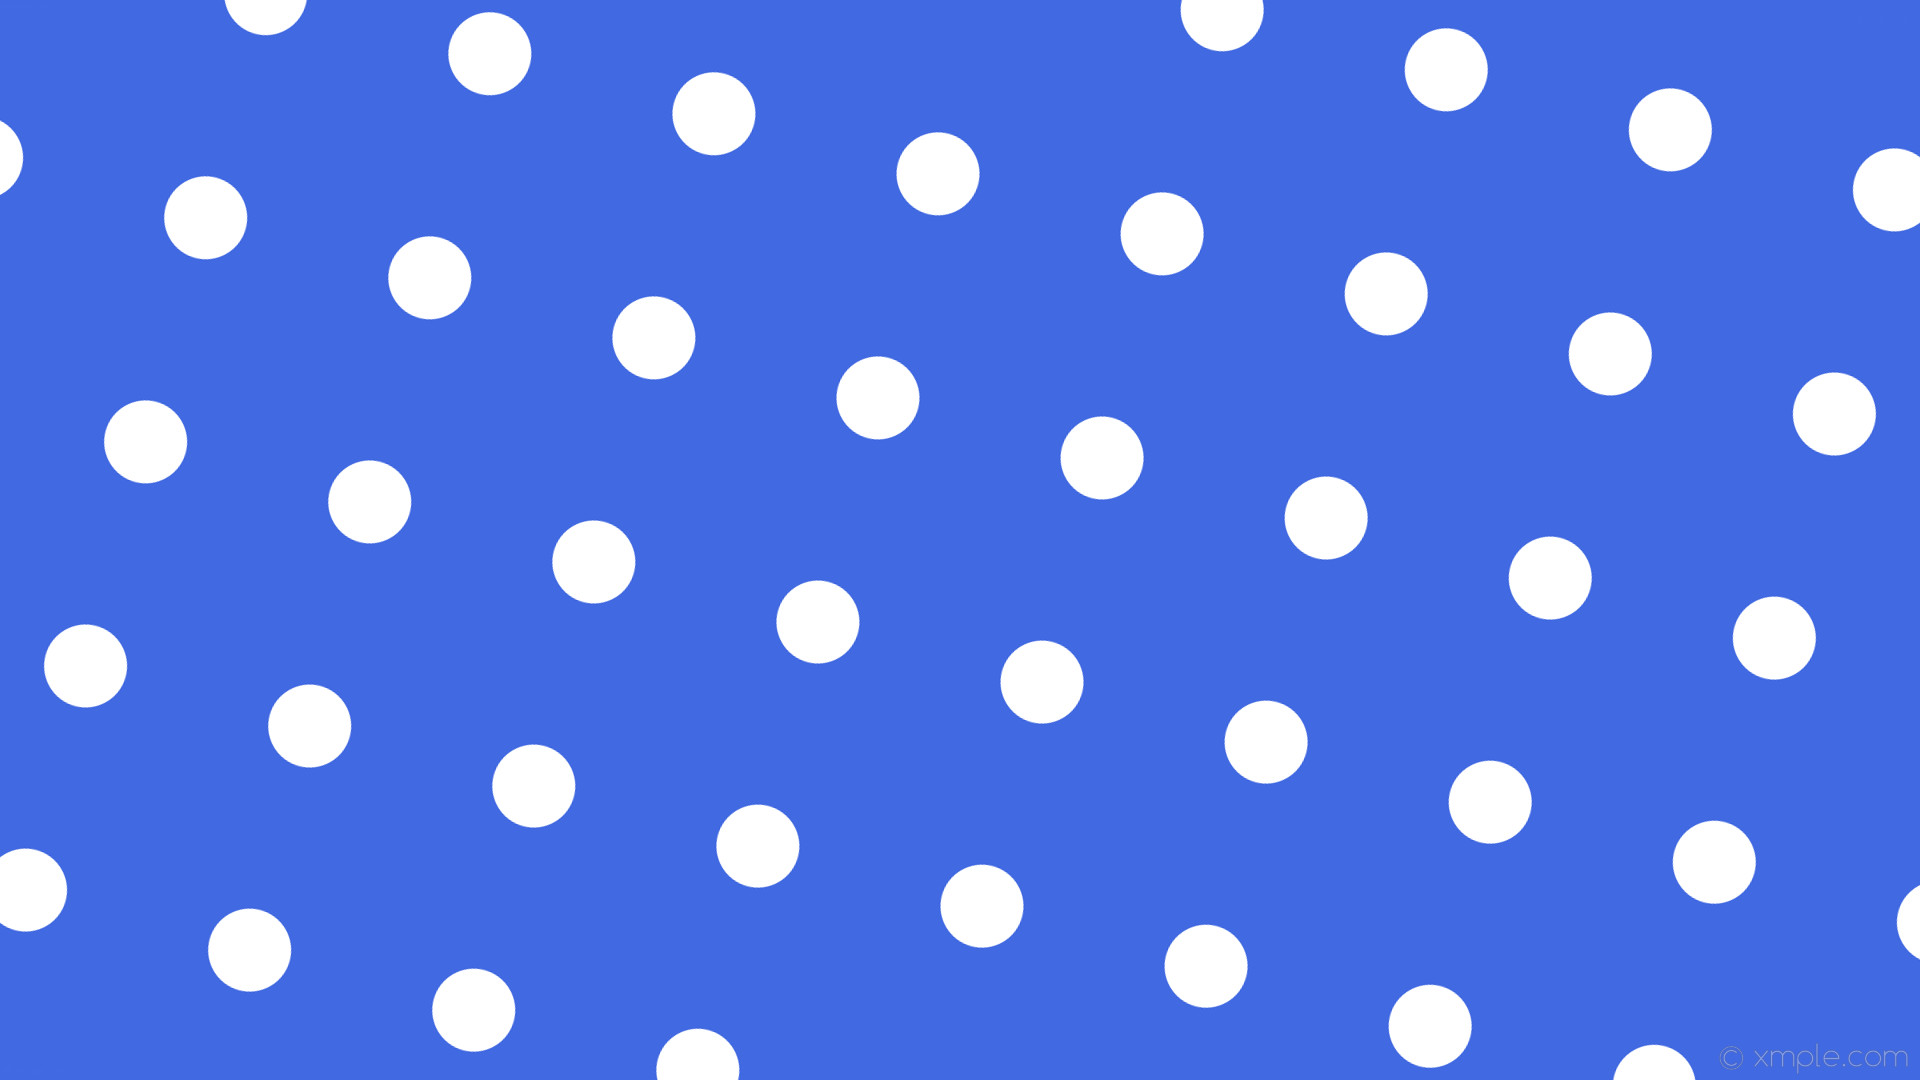 1920x1080 wallpaper blue polka dots white spots royal blue #4169e1 #ffffff 255Â° 83px  232px